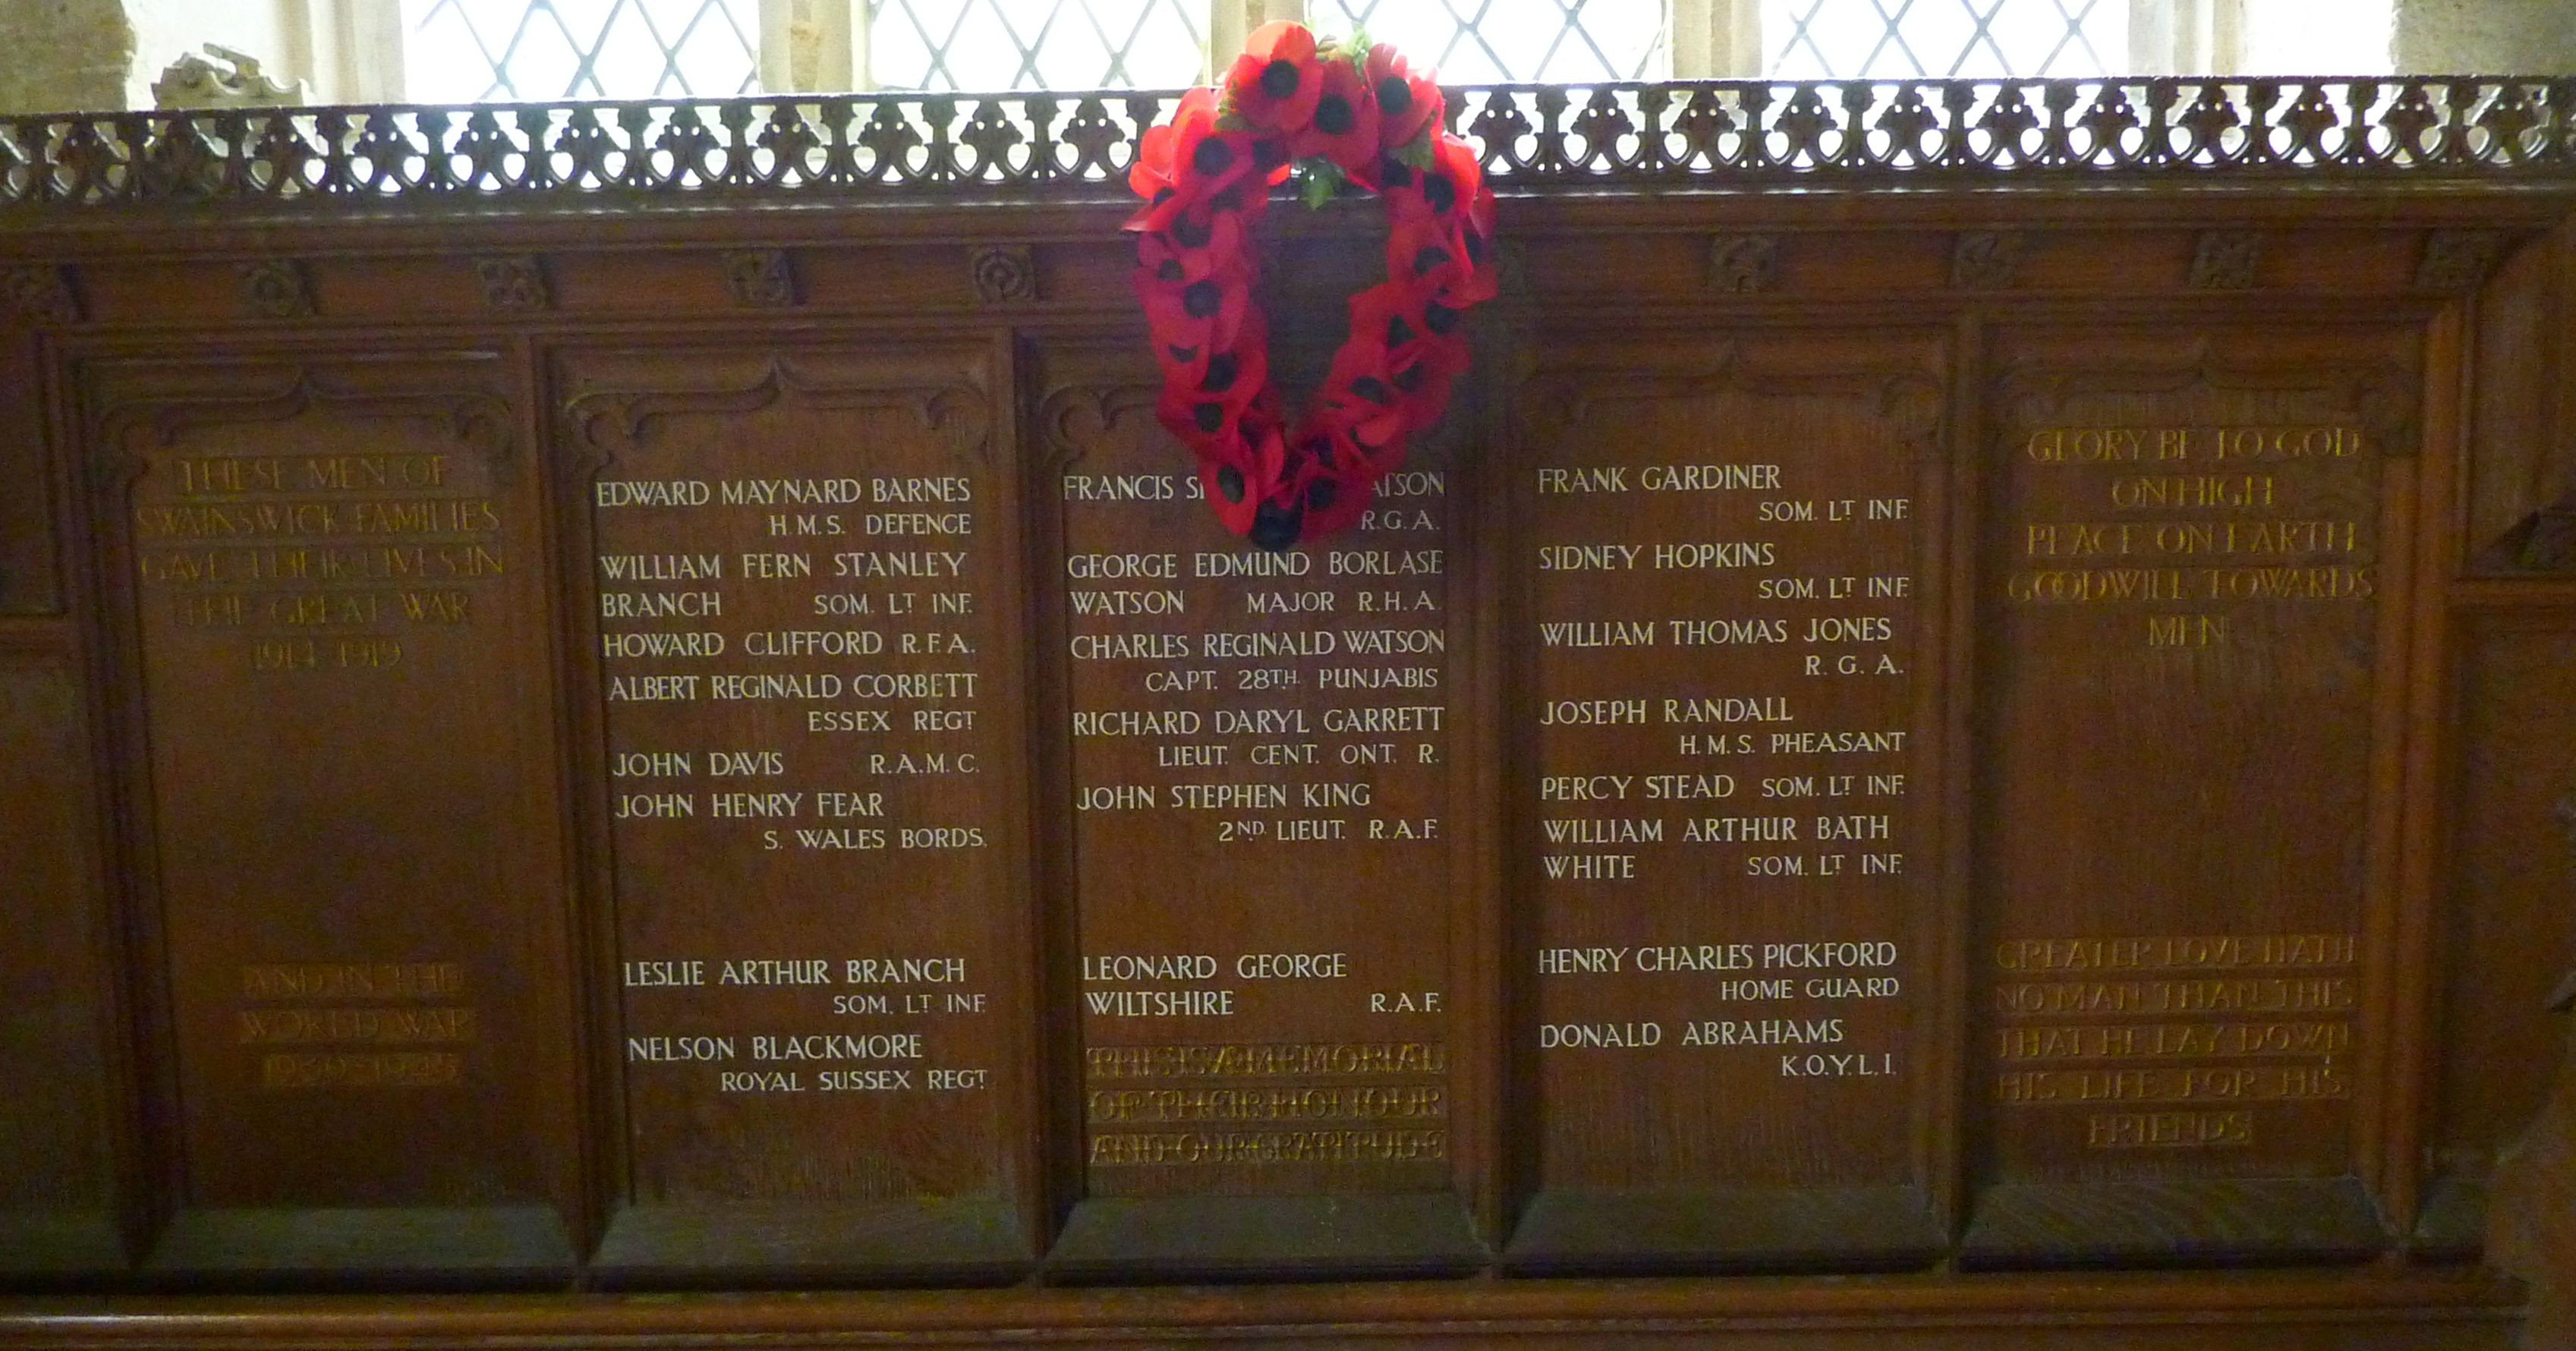 Swainswick Memorial